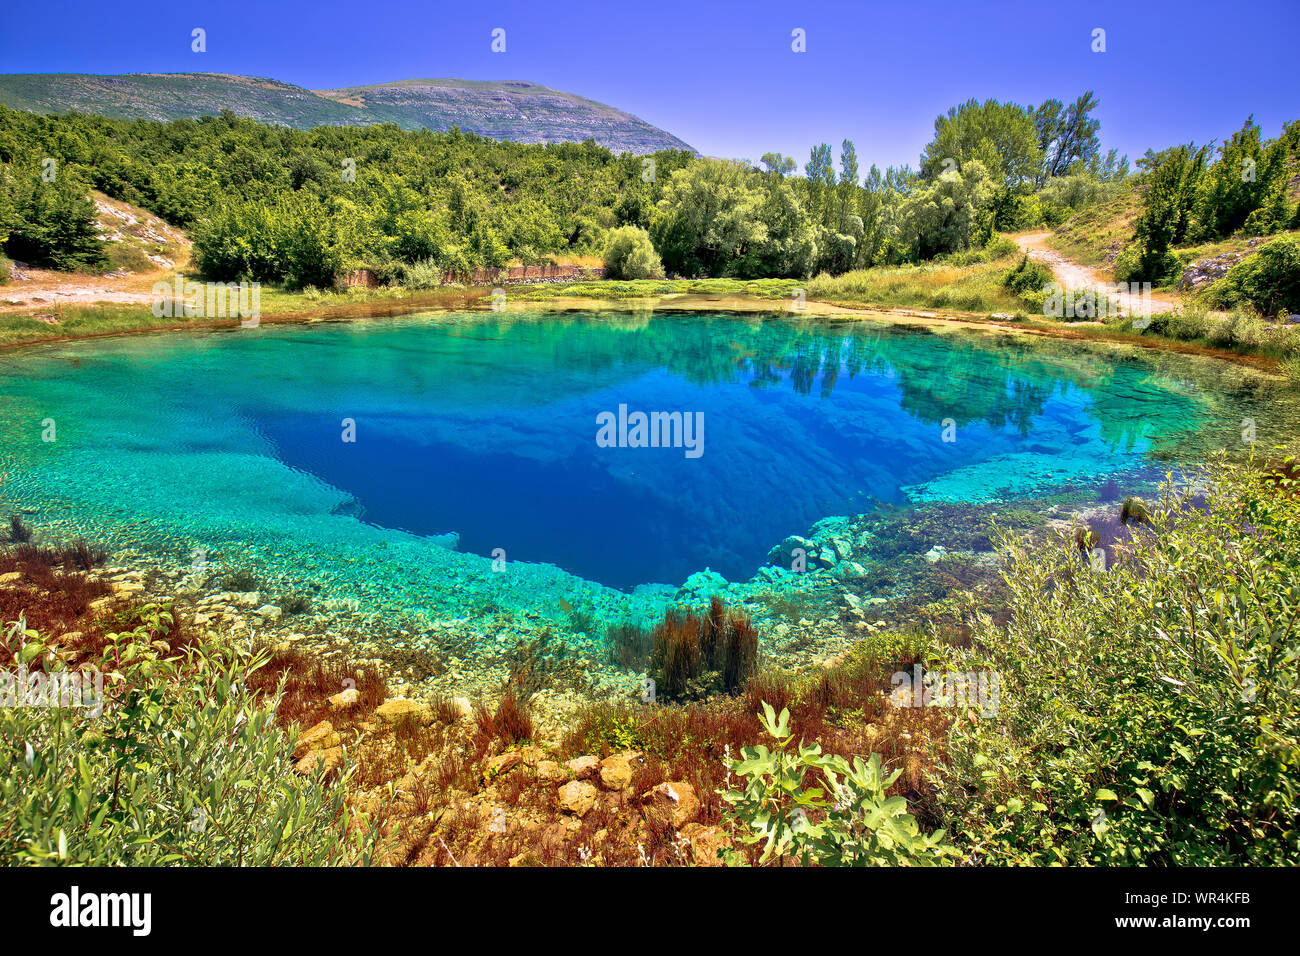 Der Fluss Cetina Quelle oder das Auge der Erde Querformat, Dalmatinische Hinterland von Kroatien Stockfoto